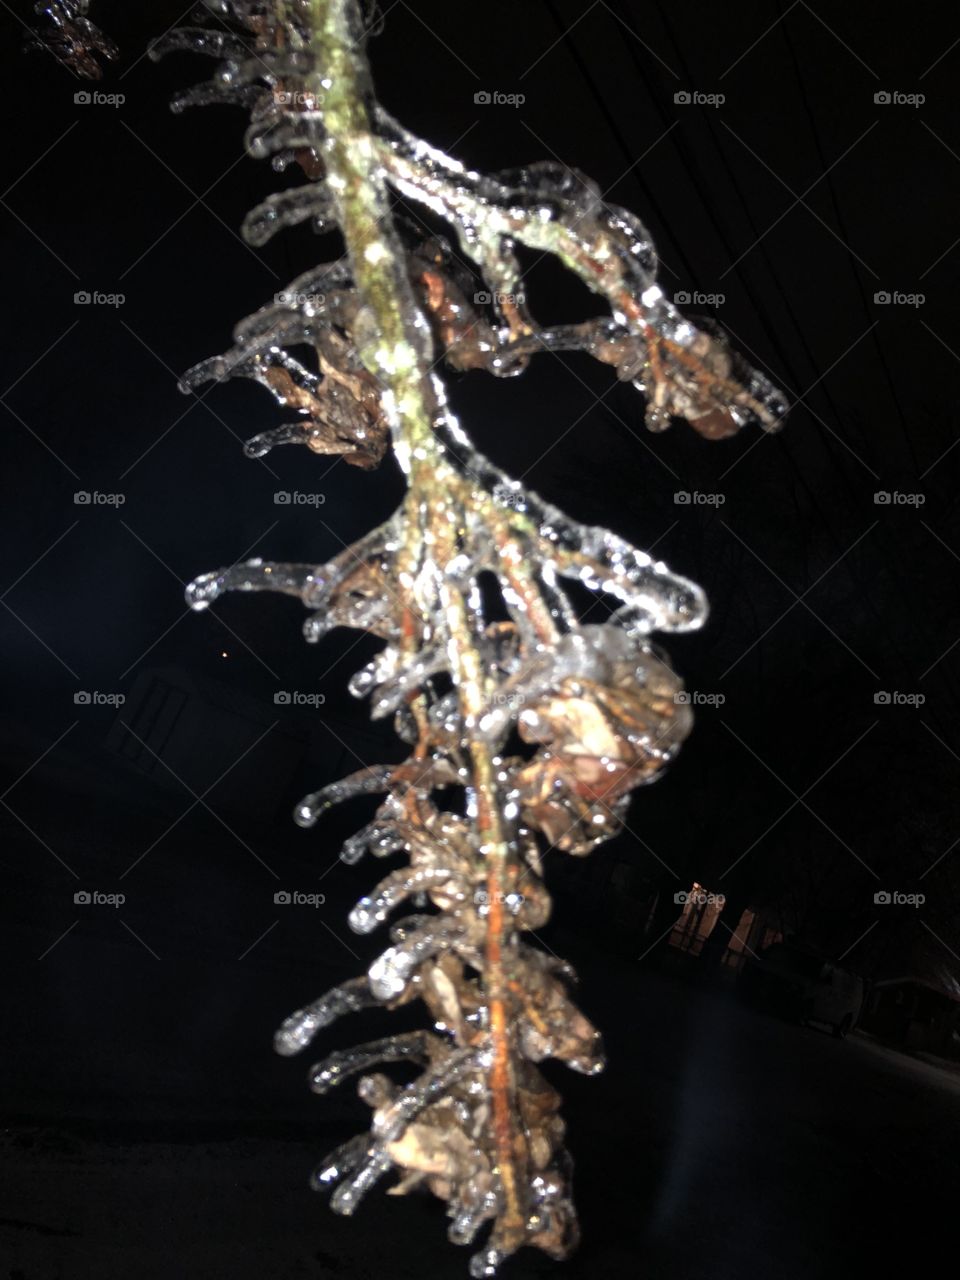 Frozen tree branch